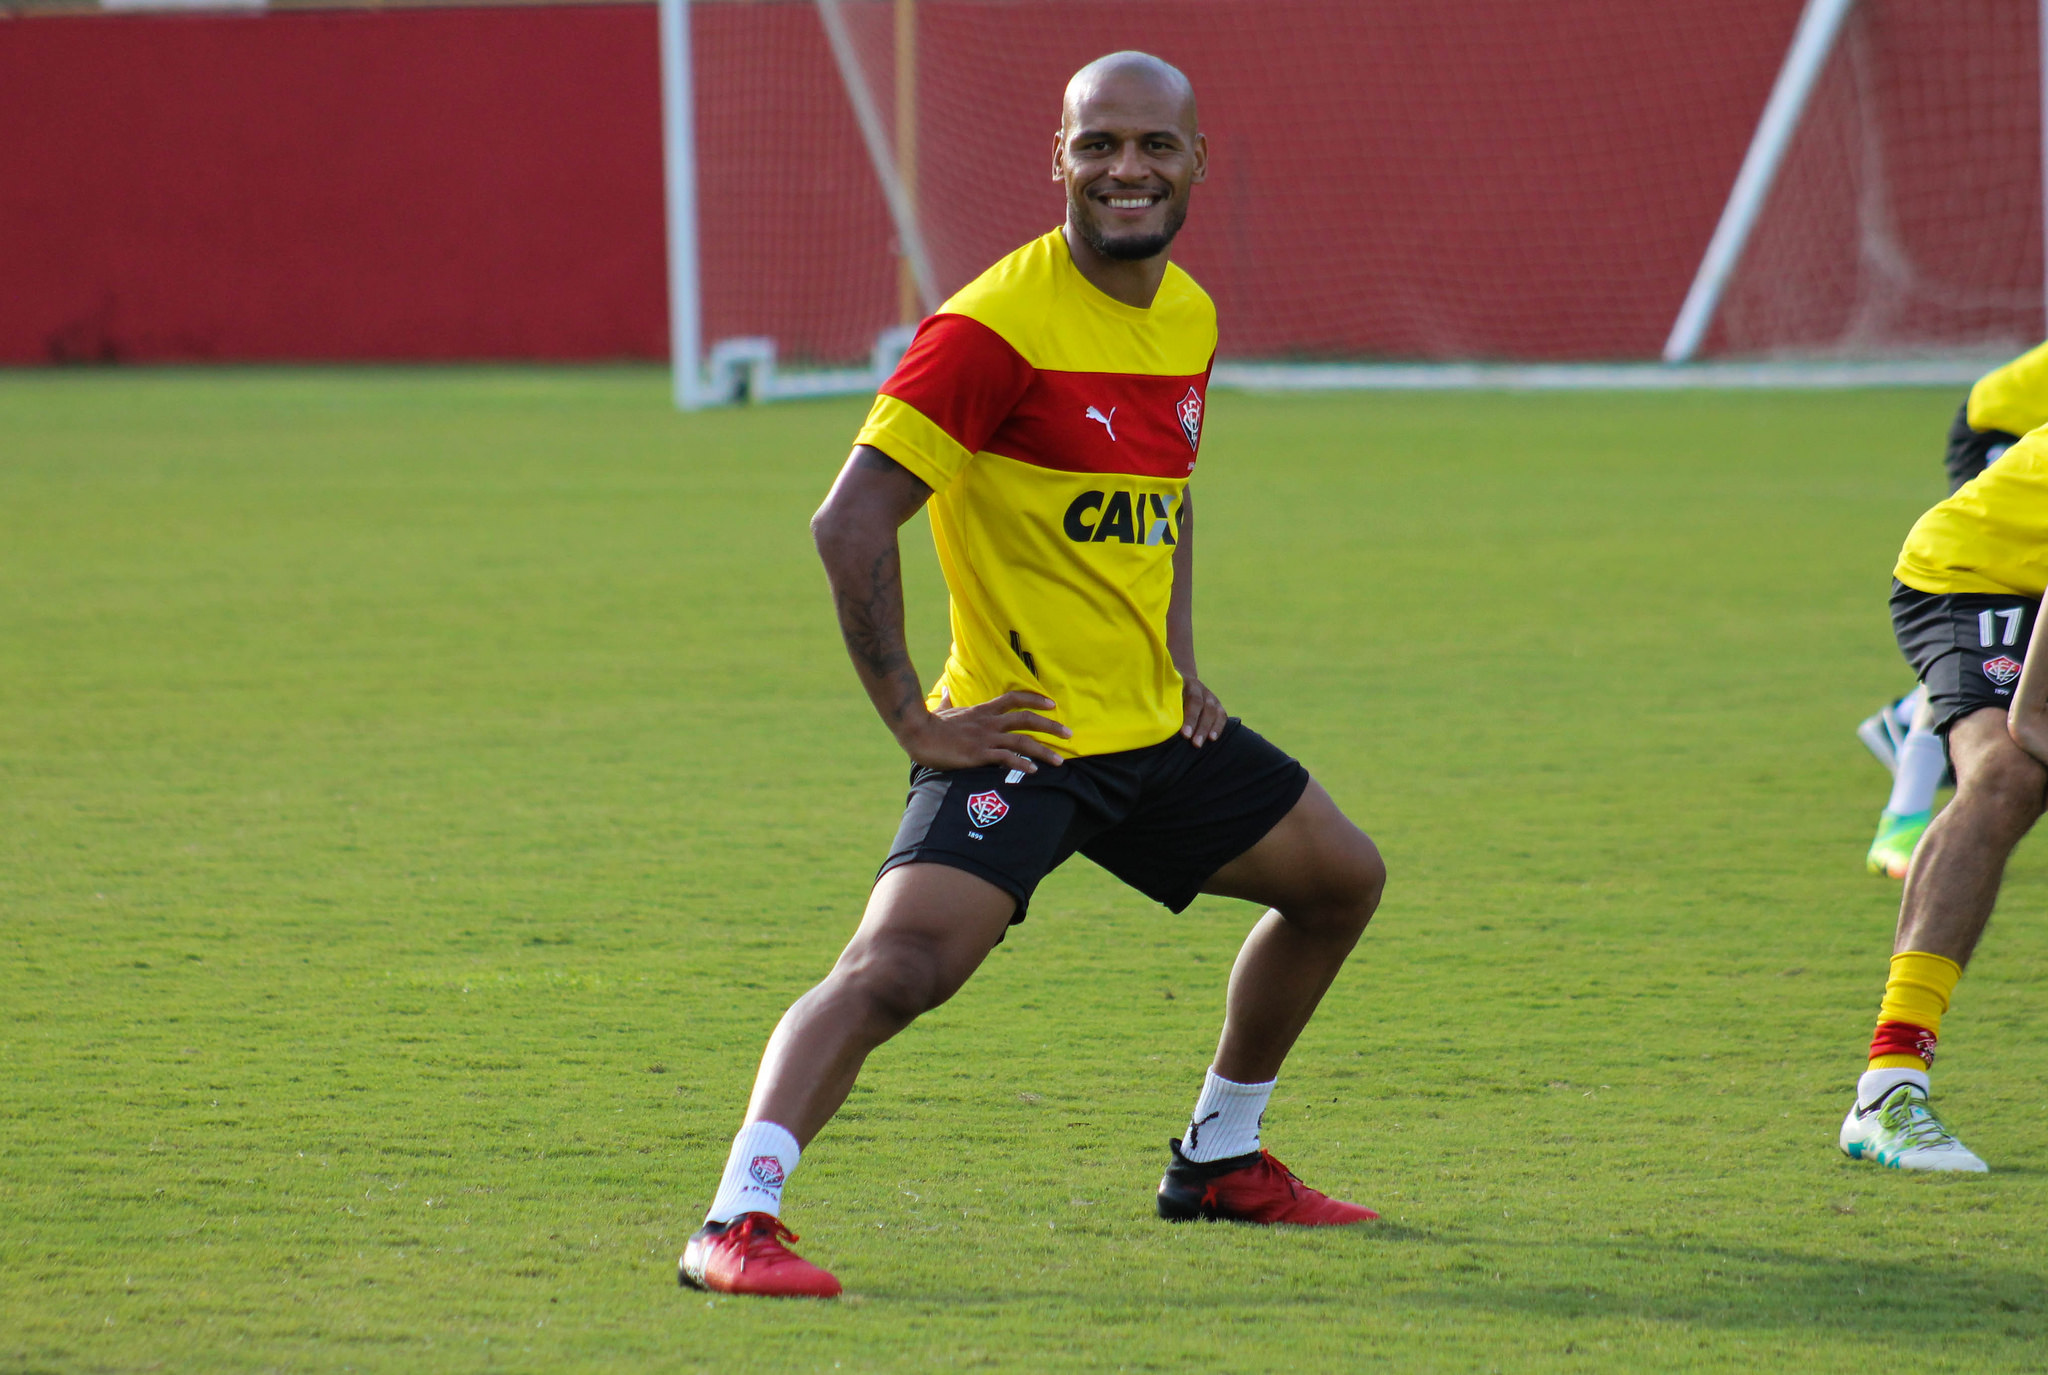 Patric elogia grupo do Vitória e mira jogos contra o Bahia: “Nosso time amadureceu muito”